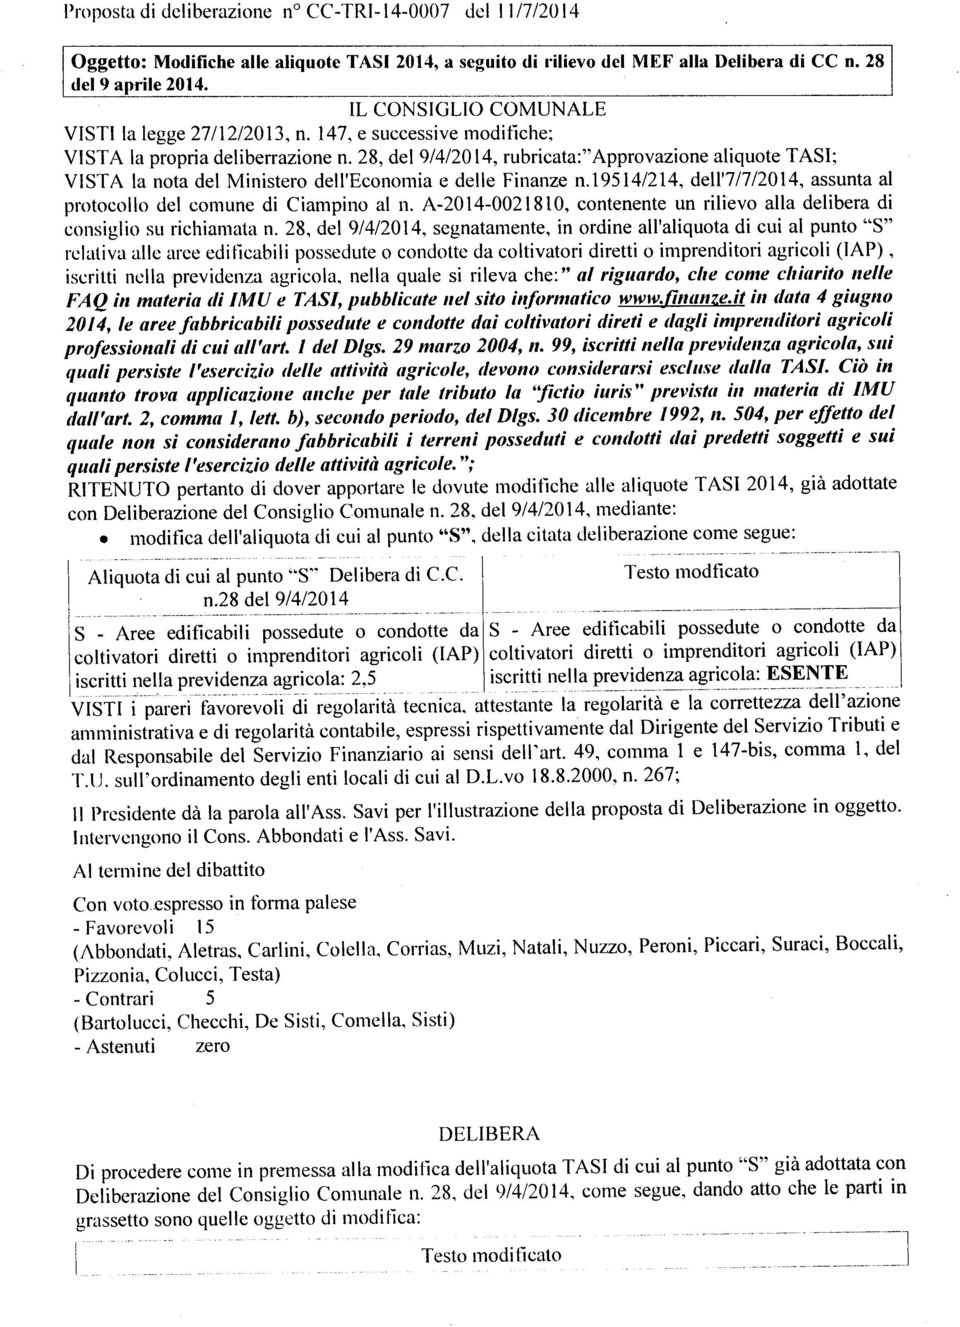 28, del 9/4/20 14, rubrcata: Approvazone alquote TAS; VSTA la nota del Mnstero dell Economa e delle Fnanze n.19514/214, dell 7/7/2014, assunta al protocollo del comune d Campno al n.